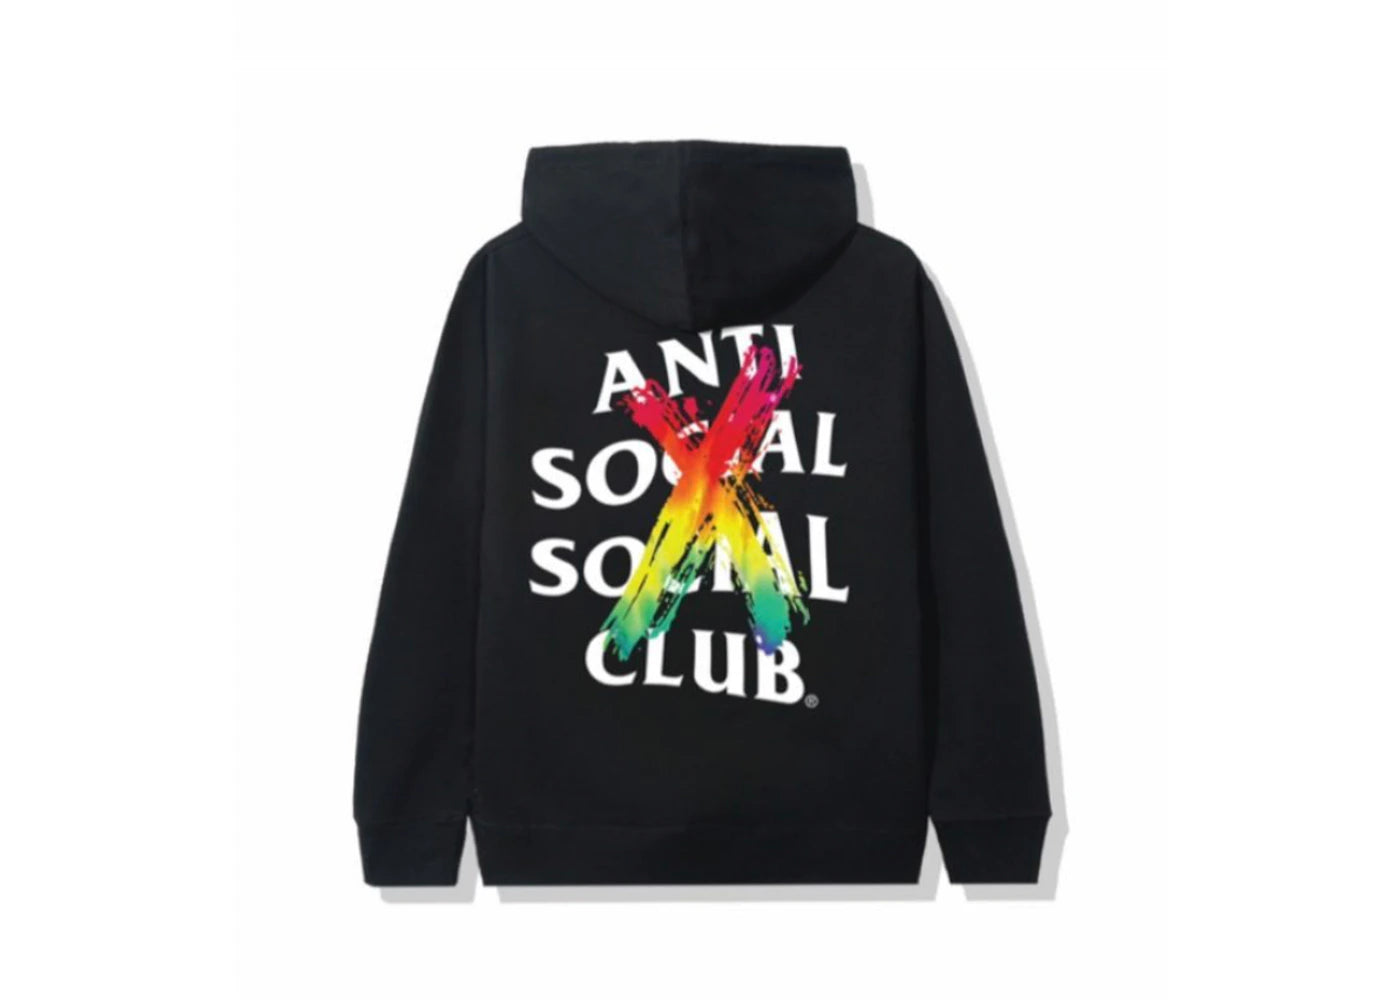 ANTI-SOCIAL SOCIAL CLUB "CANCELLED" HOODIE